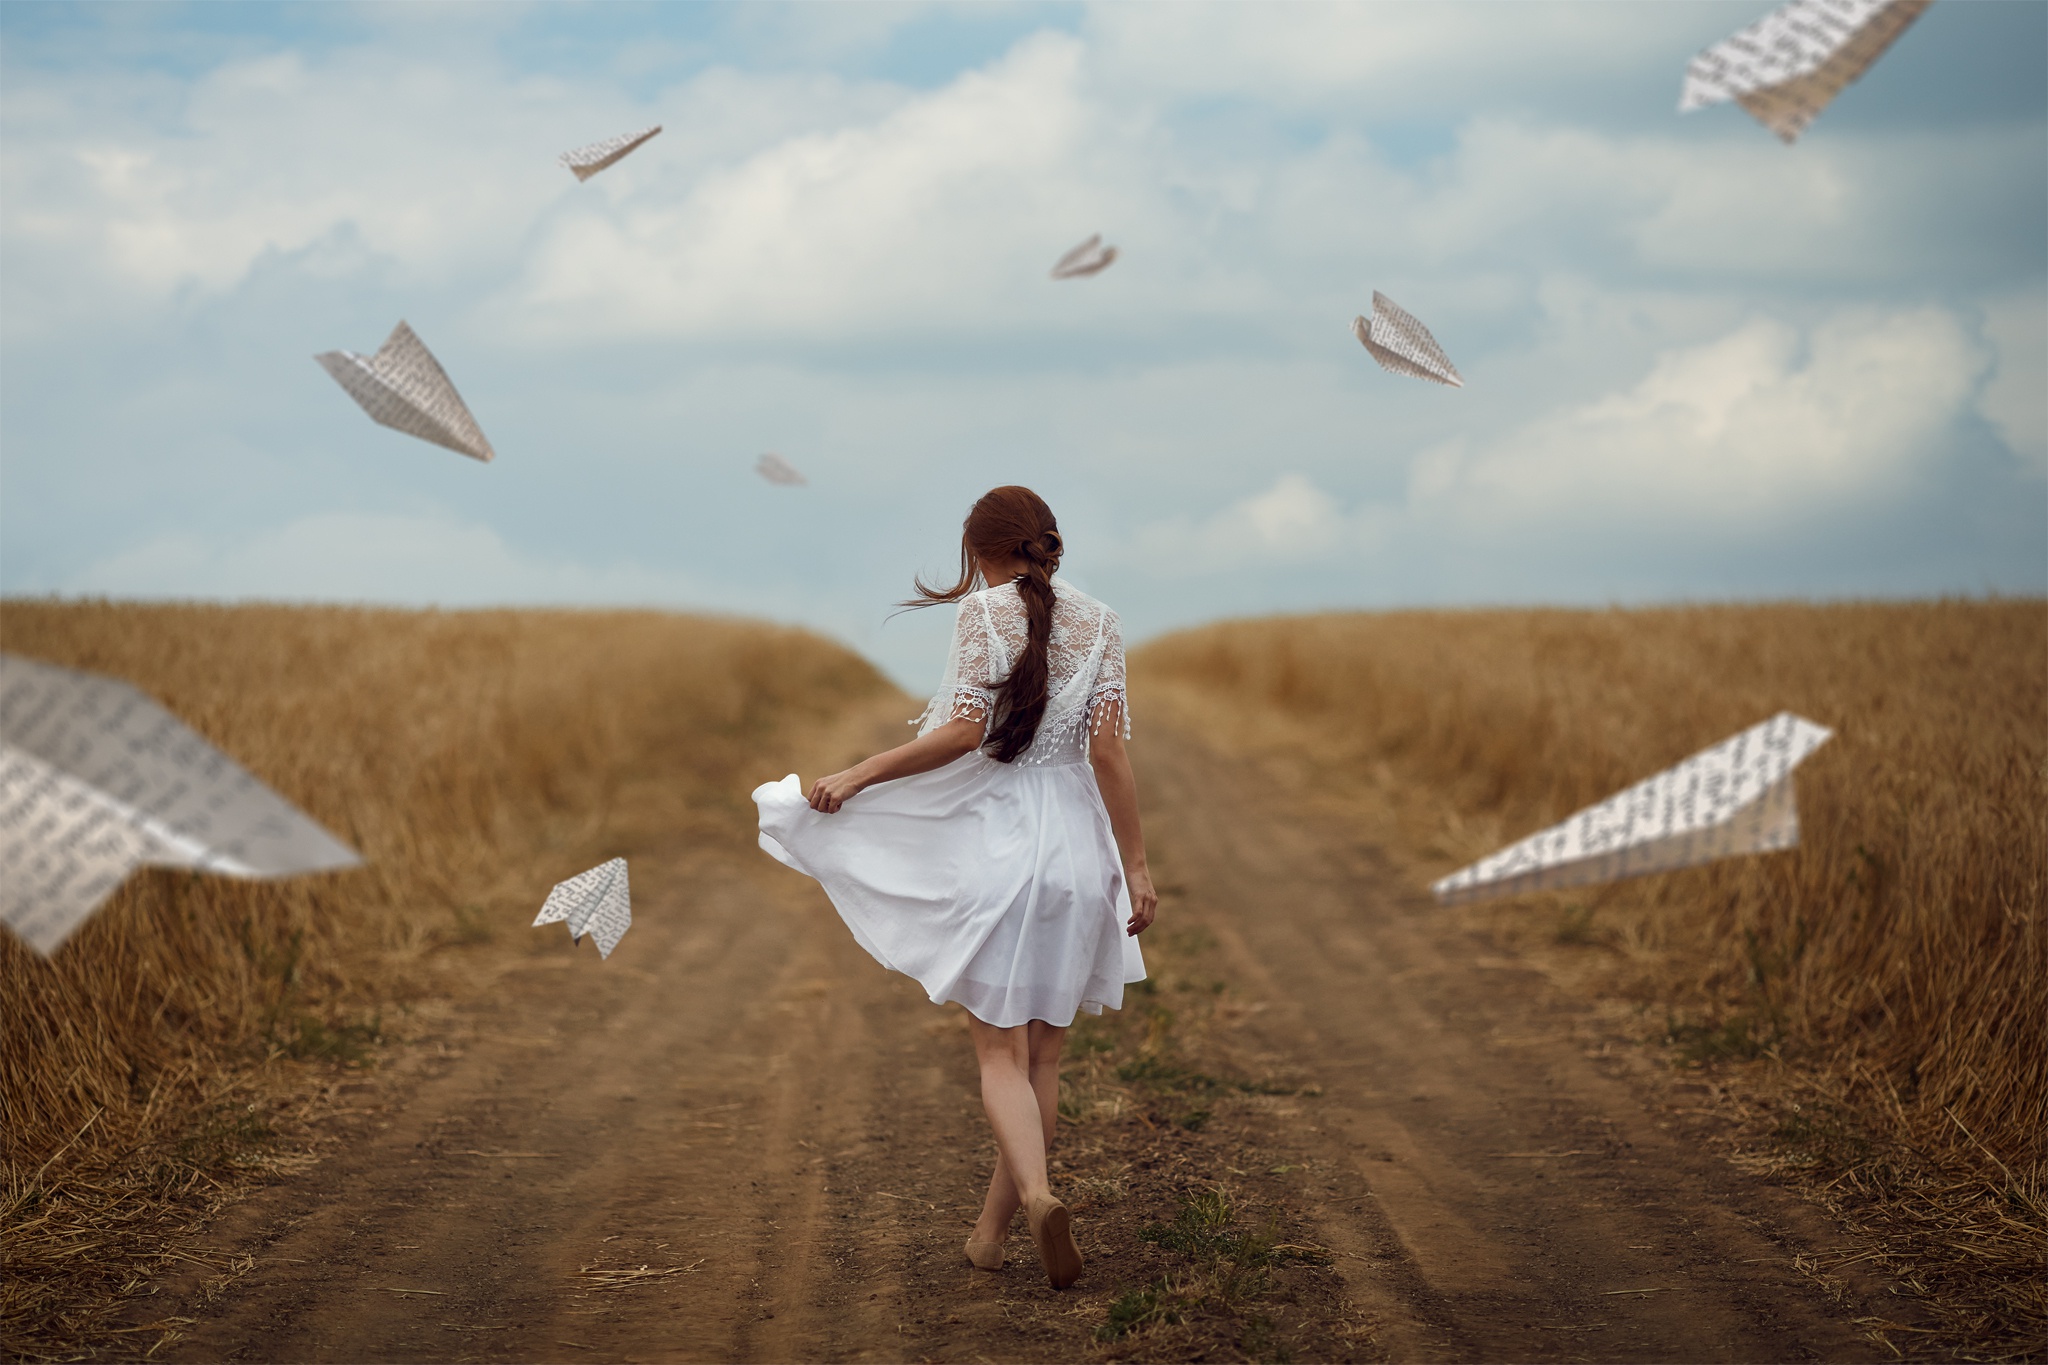 Улетаем в небеса песня слушать. Девушка в поле. Девушка с бумажным самолетиком. Девушка улетает. Фотосессия с бумажными самолетиками.